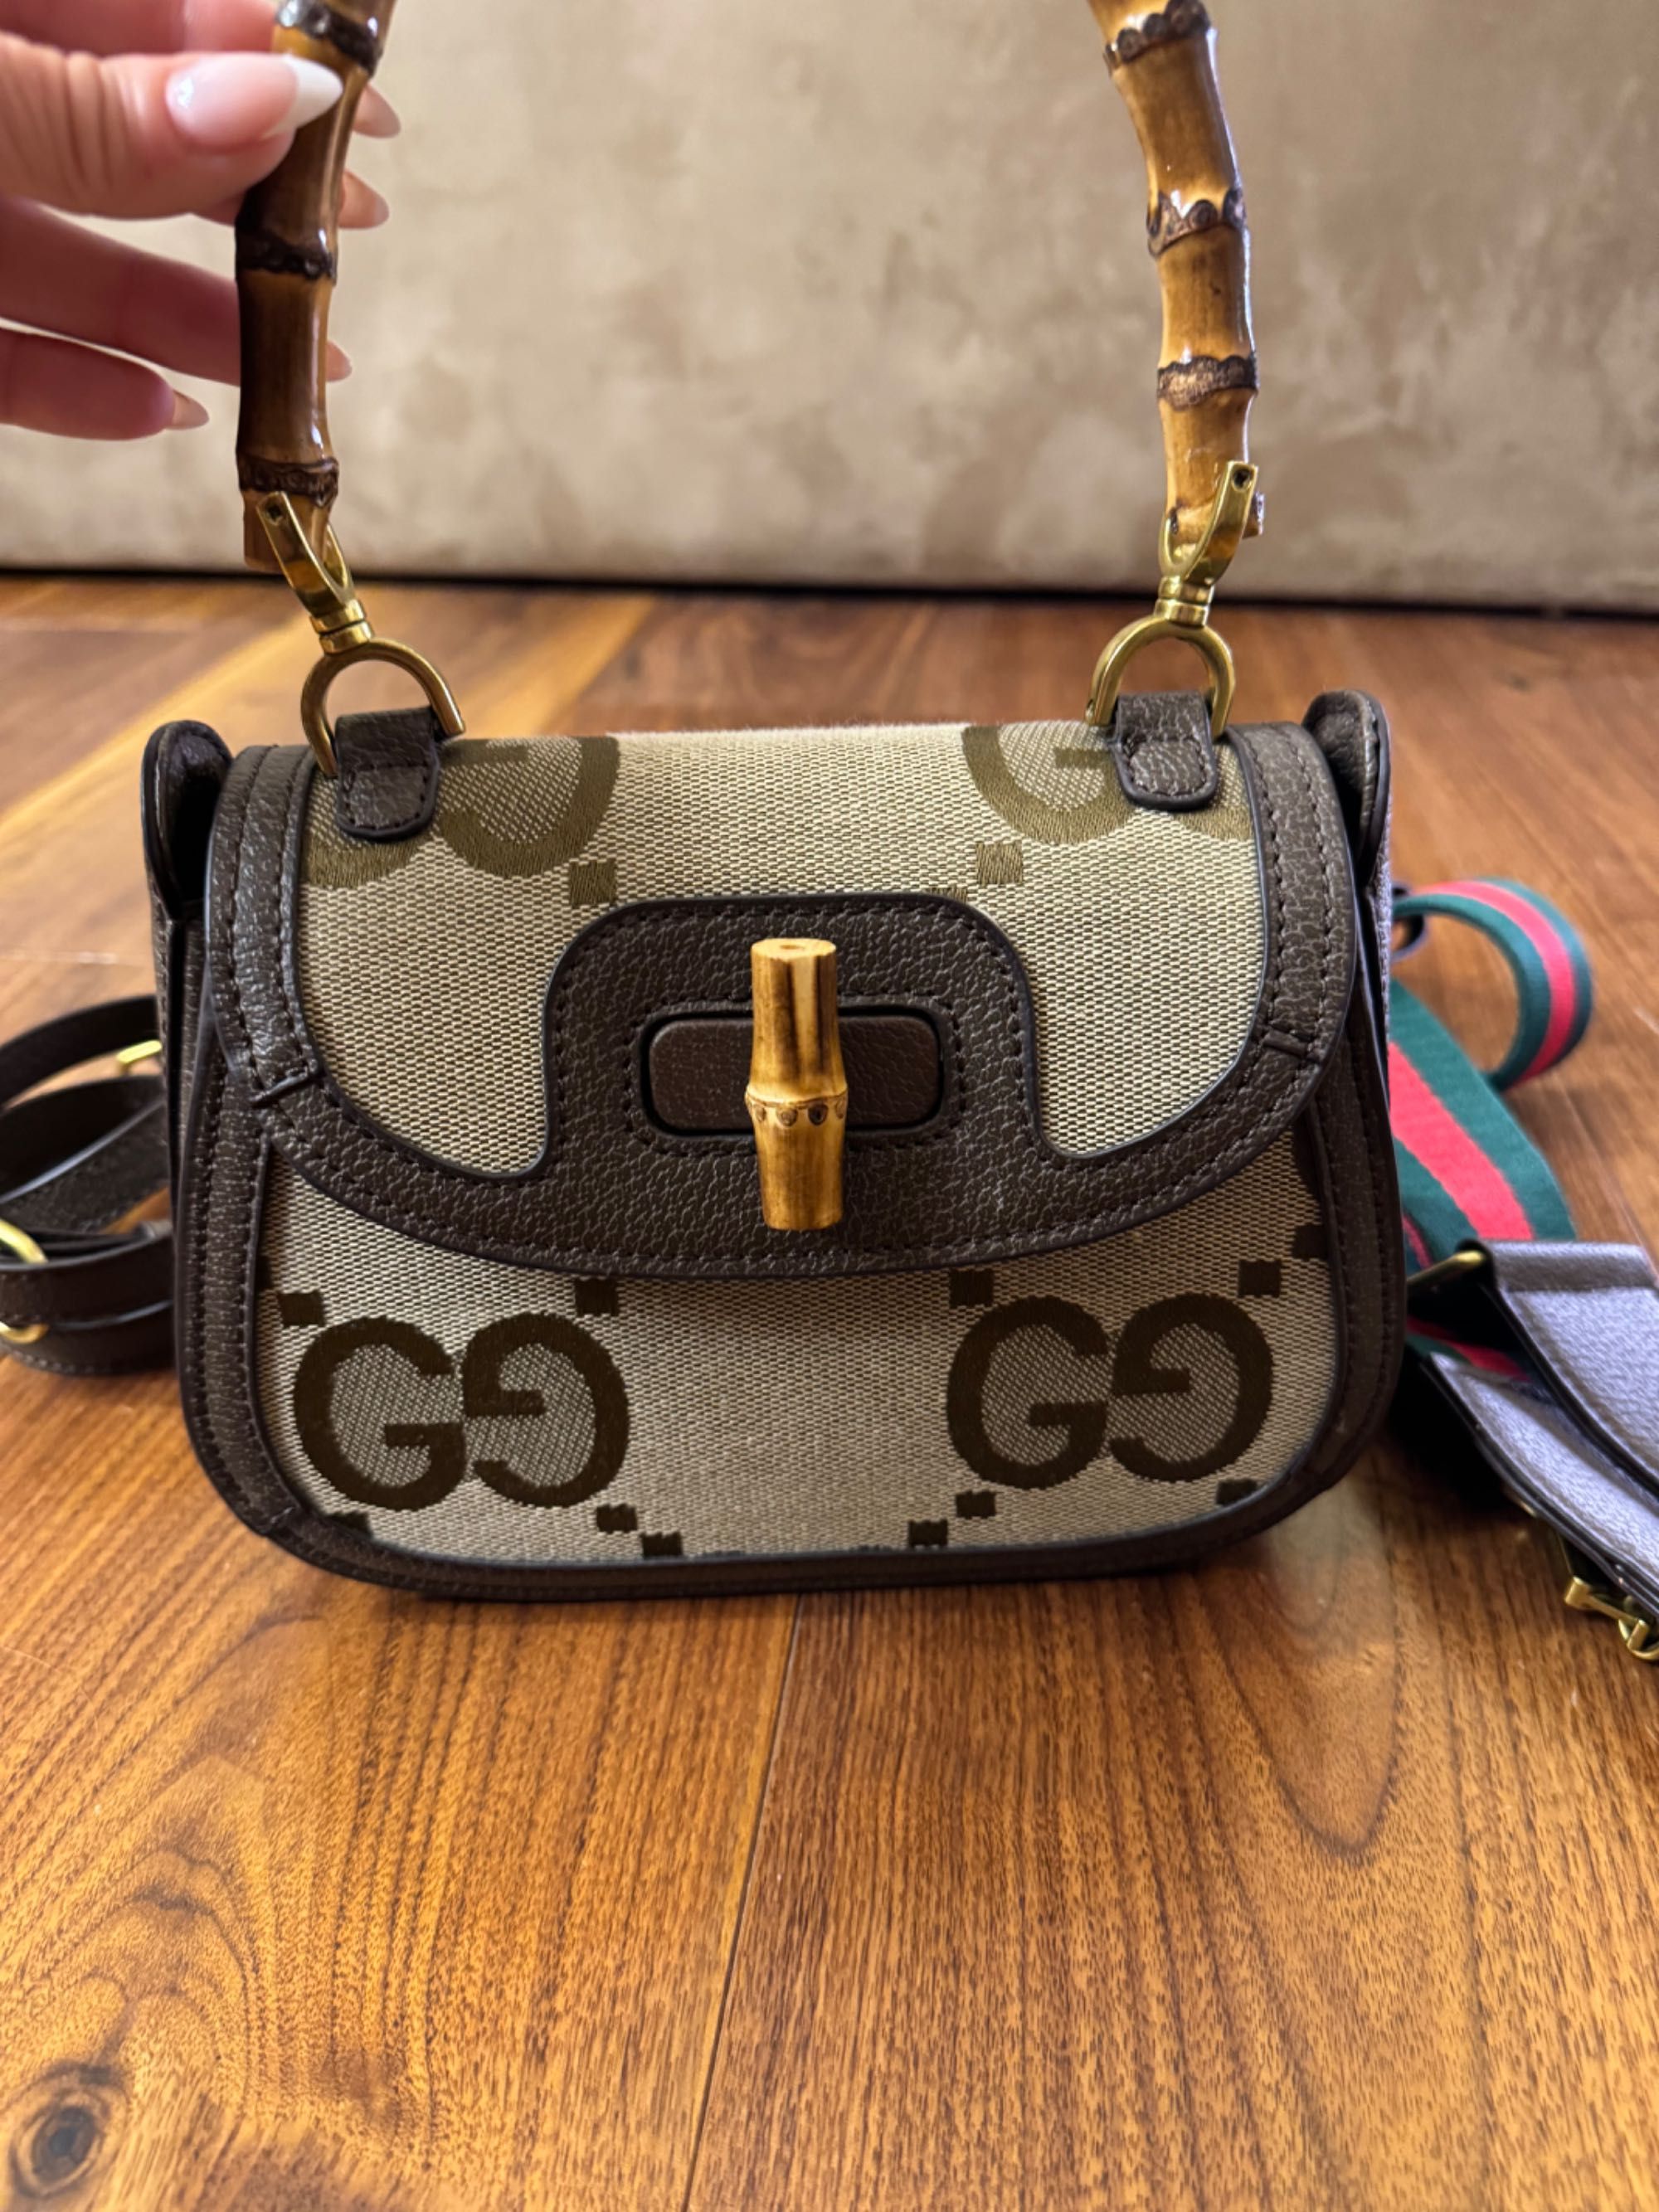 Чанта Gucci чисто нова идеална за подарък.